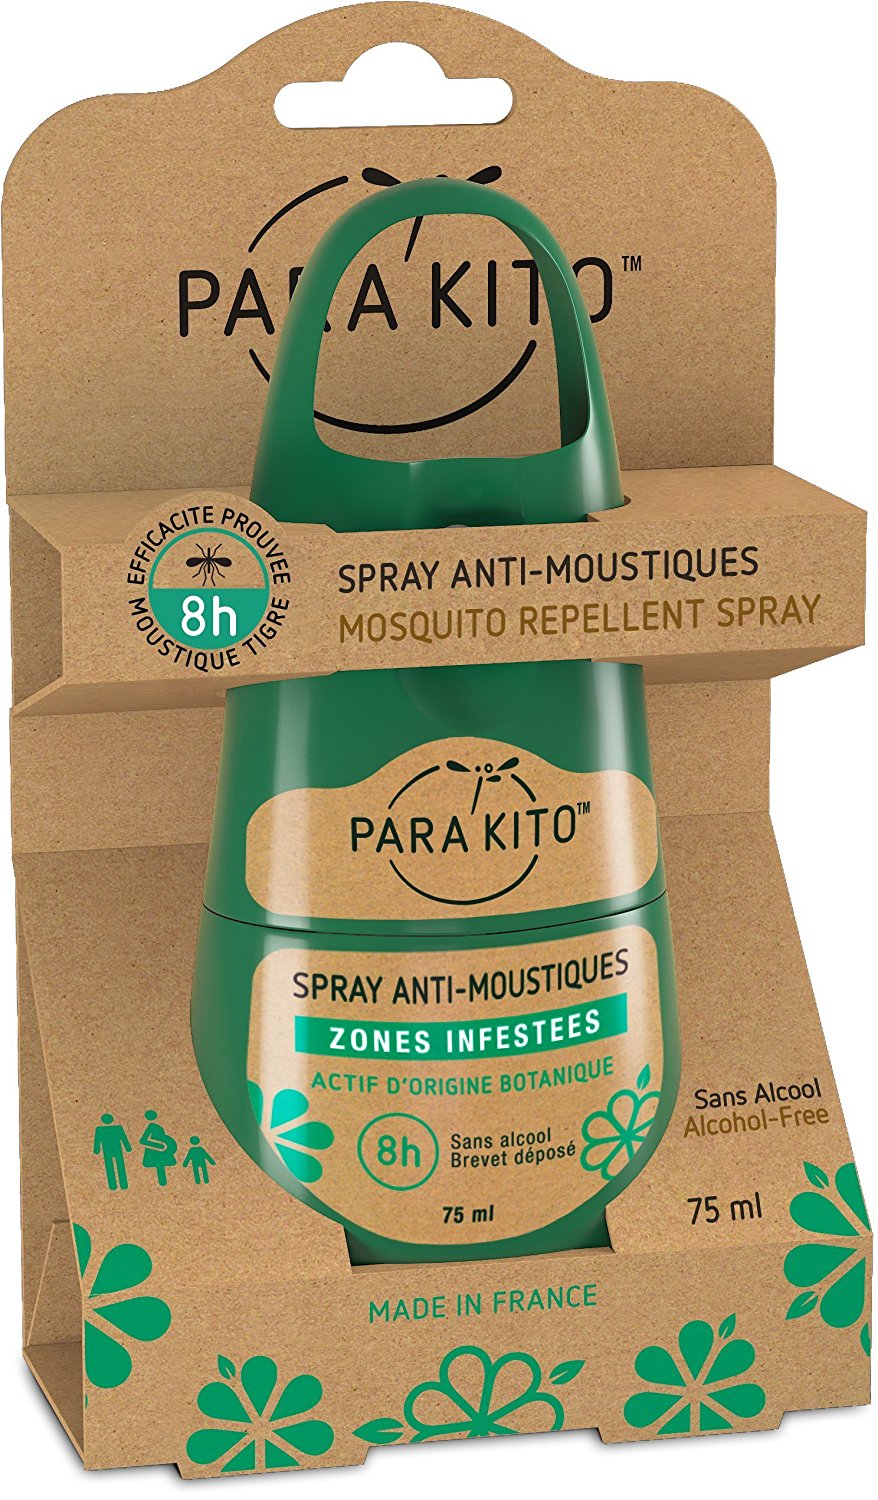 Parakito Spray Anti-Moustiques Zones Infestées 75 ml